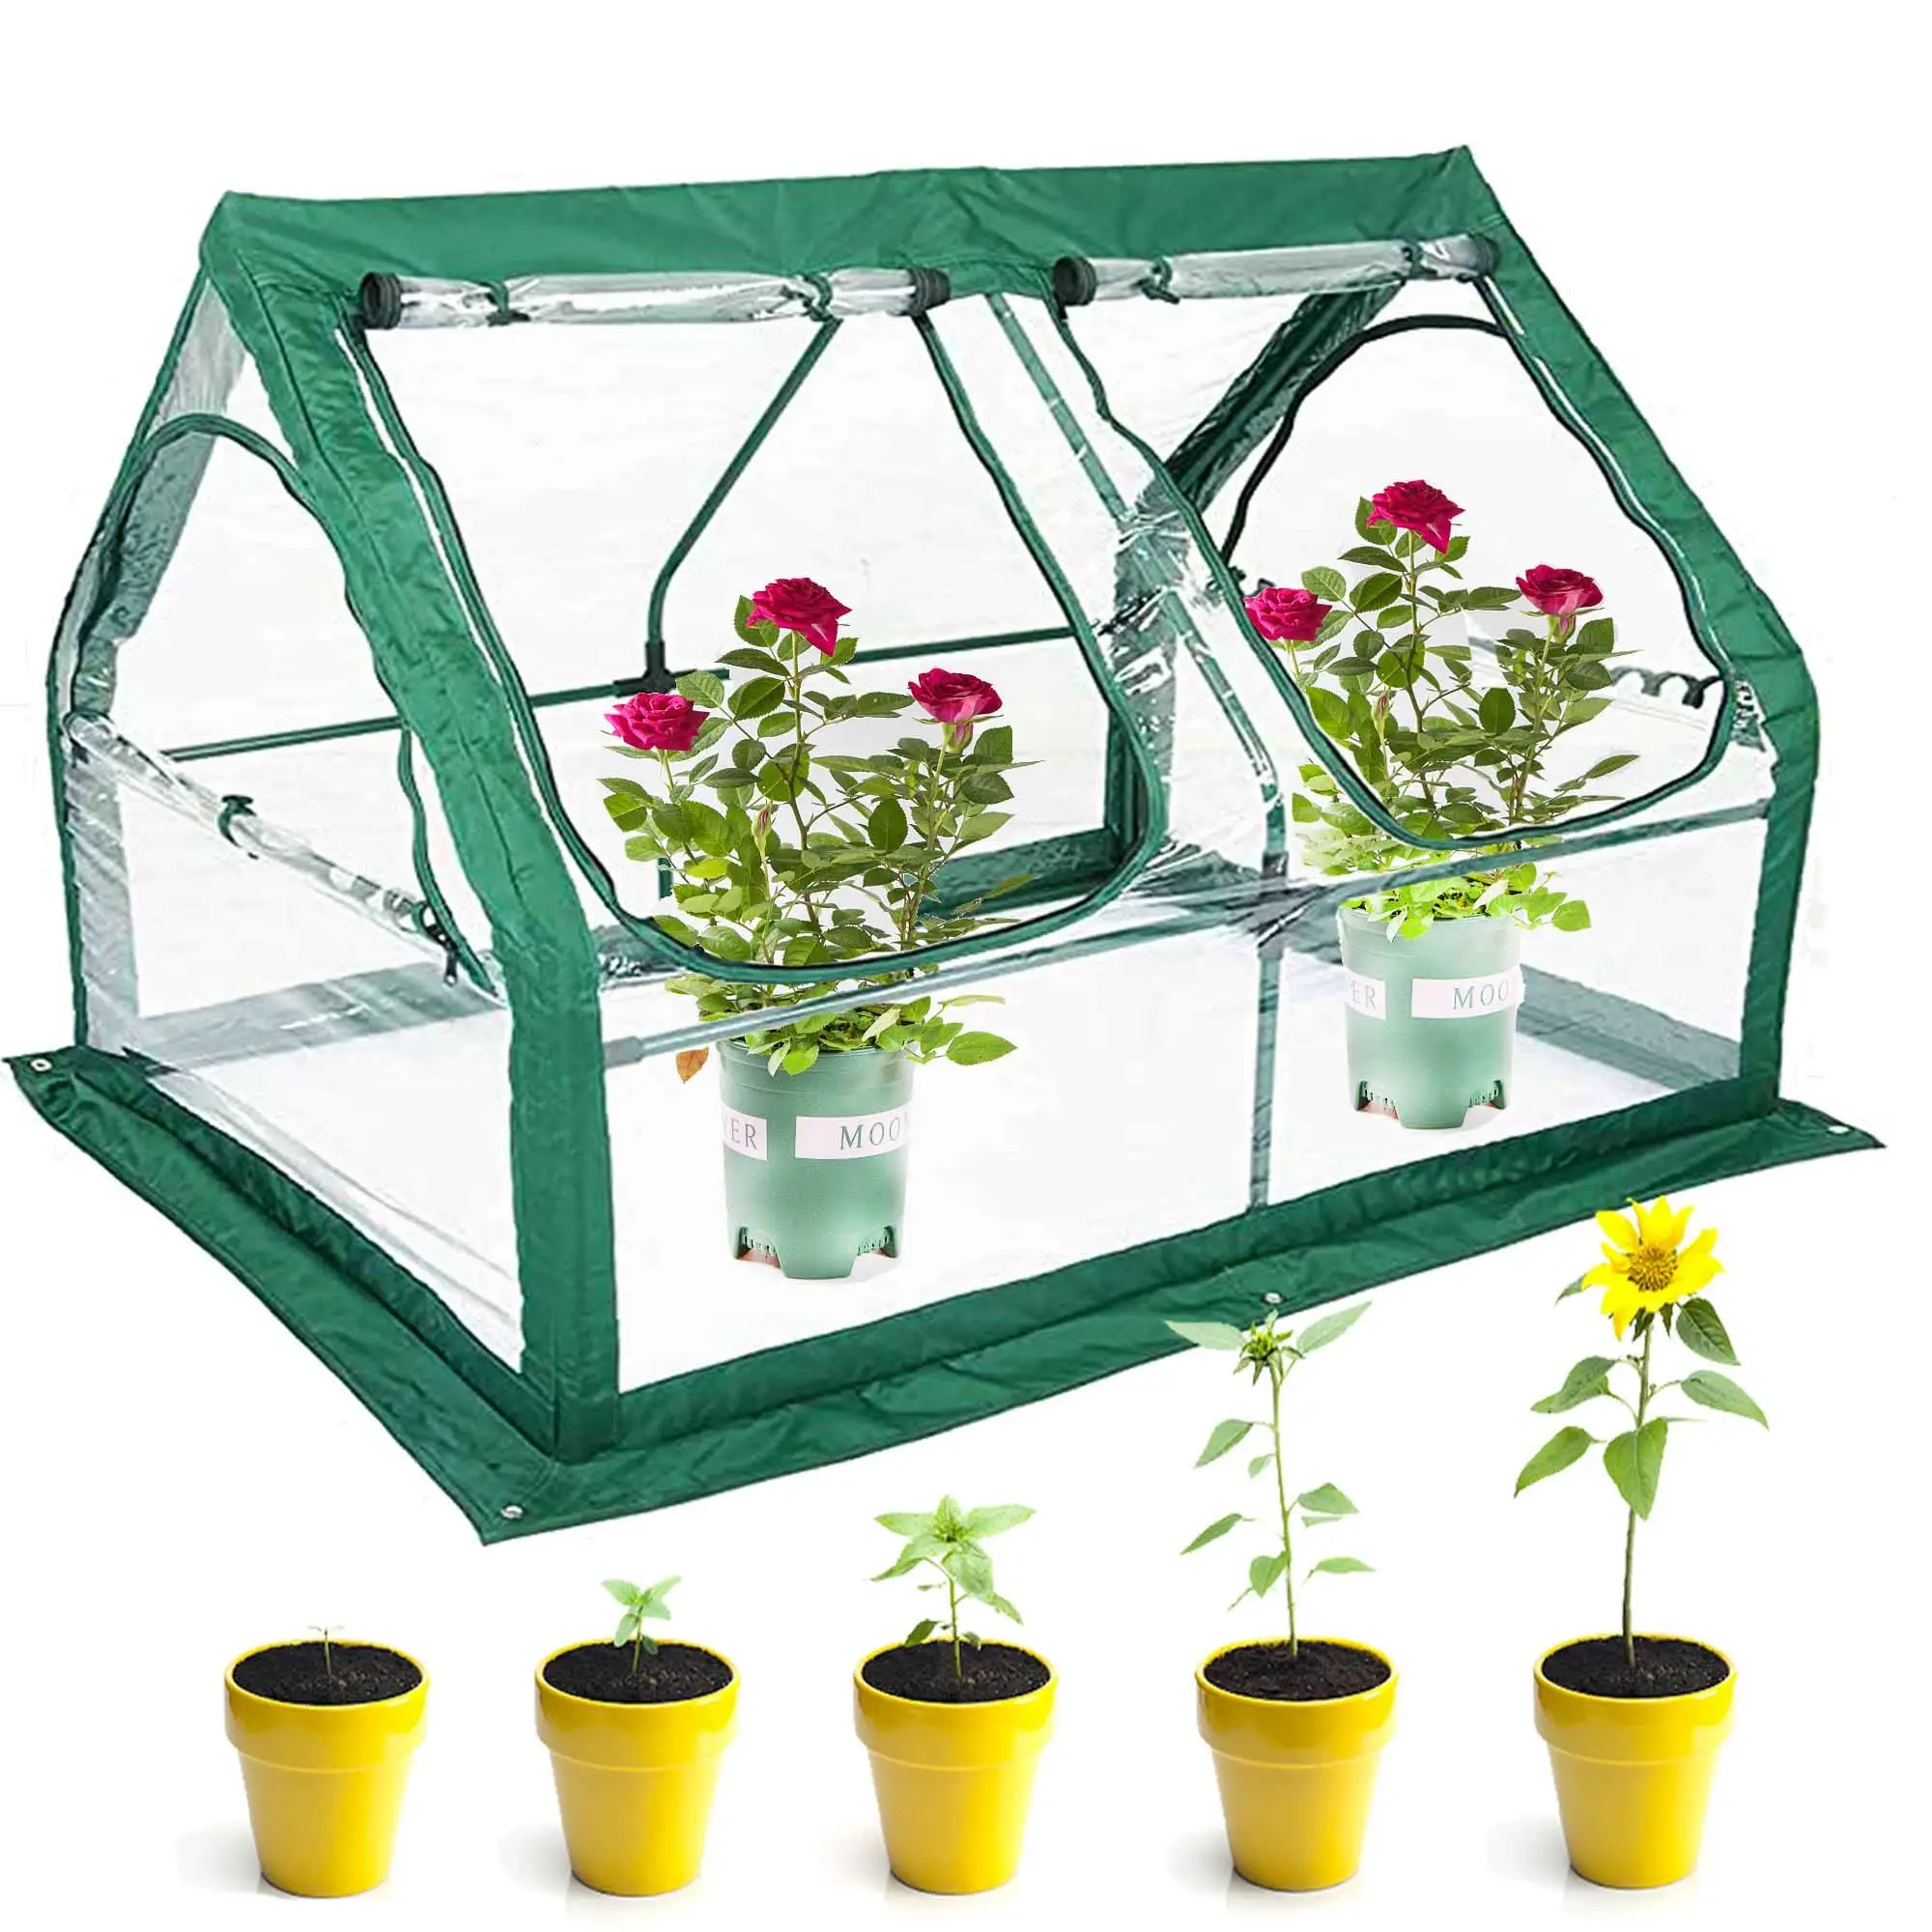 Tragbares Gewächshaus Gartengebett einfaches Aufstellen Gartenblumenhaus Doppel-Spitzendach Gewächshaus zum Schutz von Pflanzen